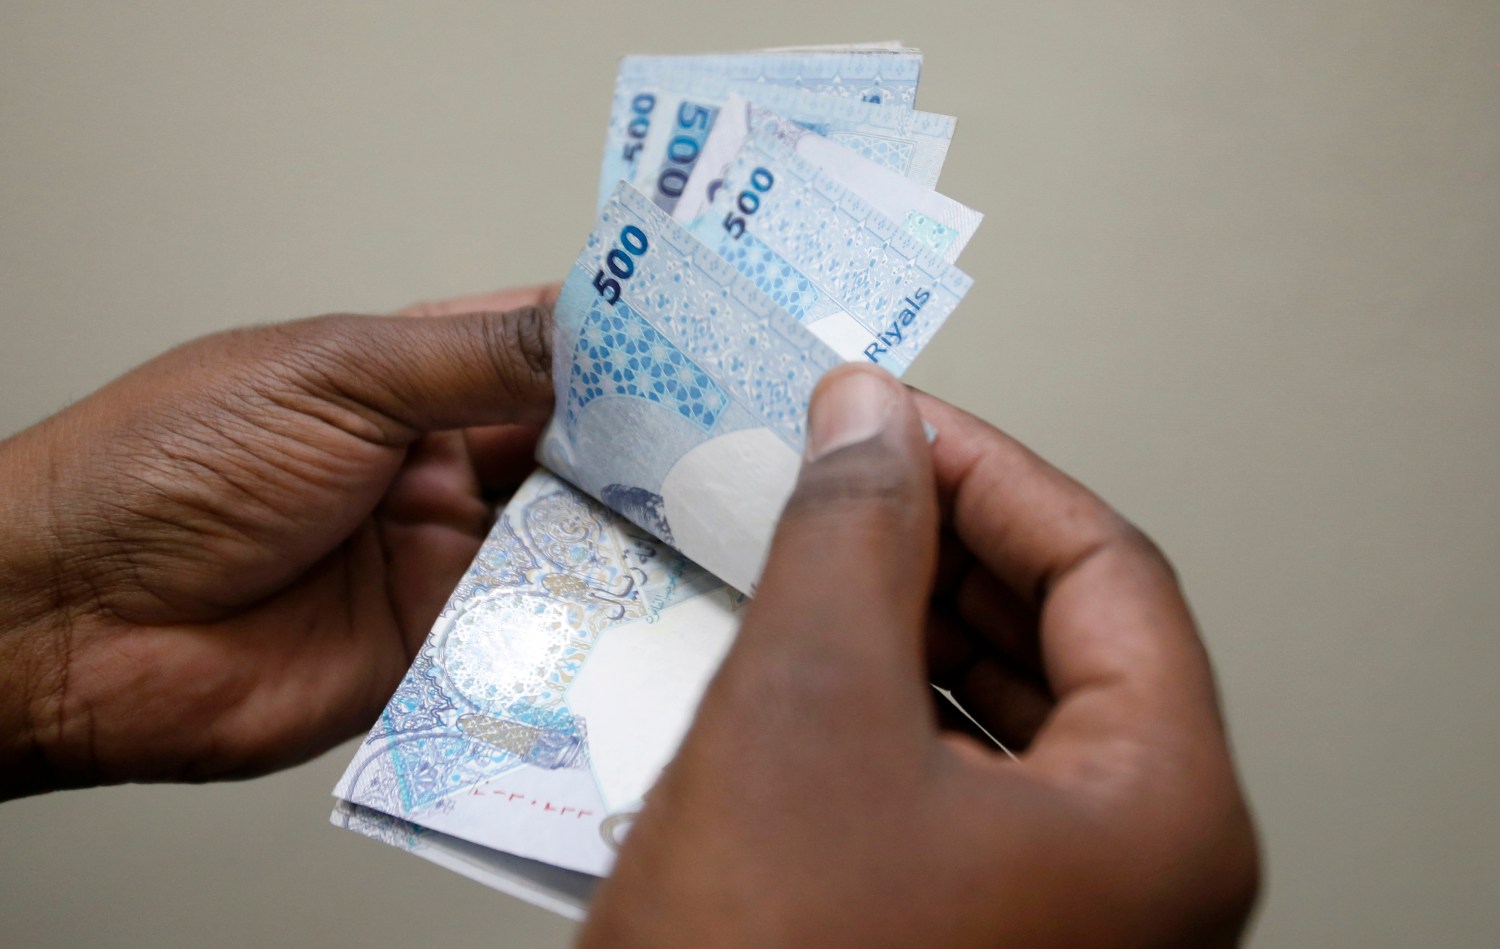 أزمة العملة في دول الخليج: كيف الخروج من المستنقع؟ | Brookings